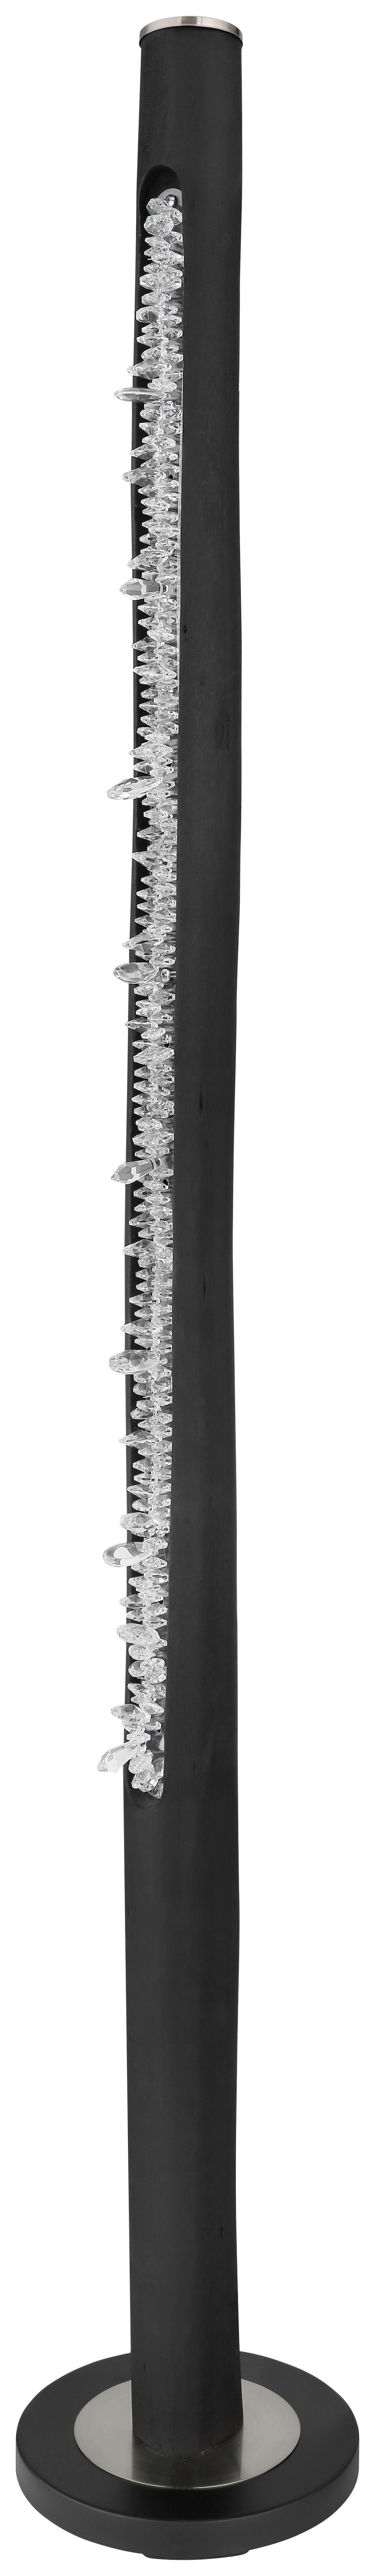 LED-STEHLEUCHTE FELICITAS - Klar/Schwarz, Design, Holz/Kunststoff (23/151cm) - Globo